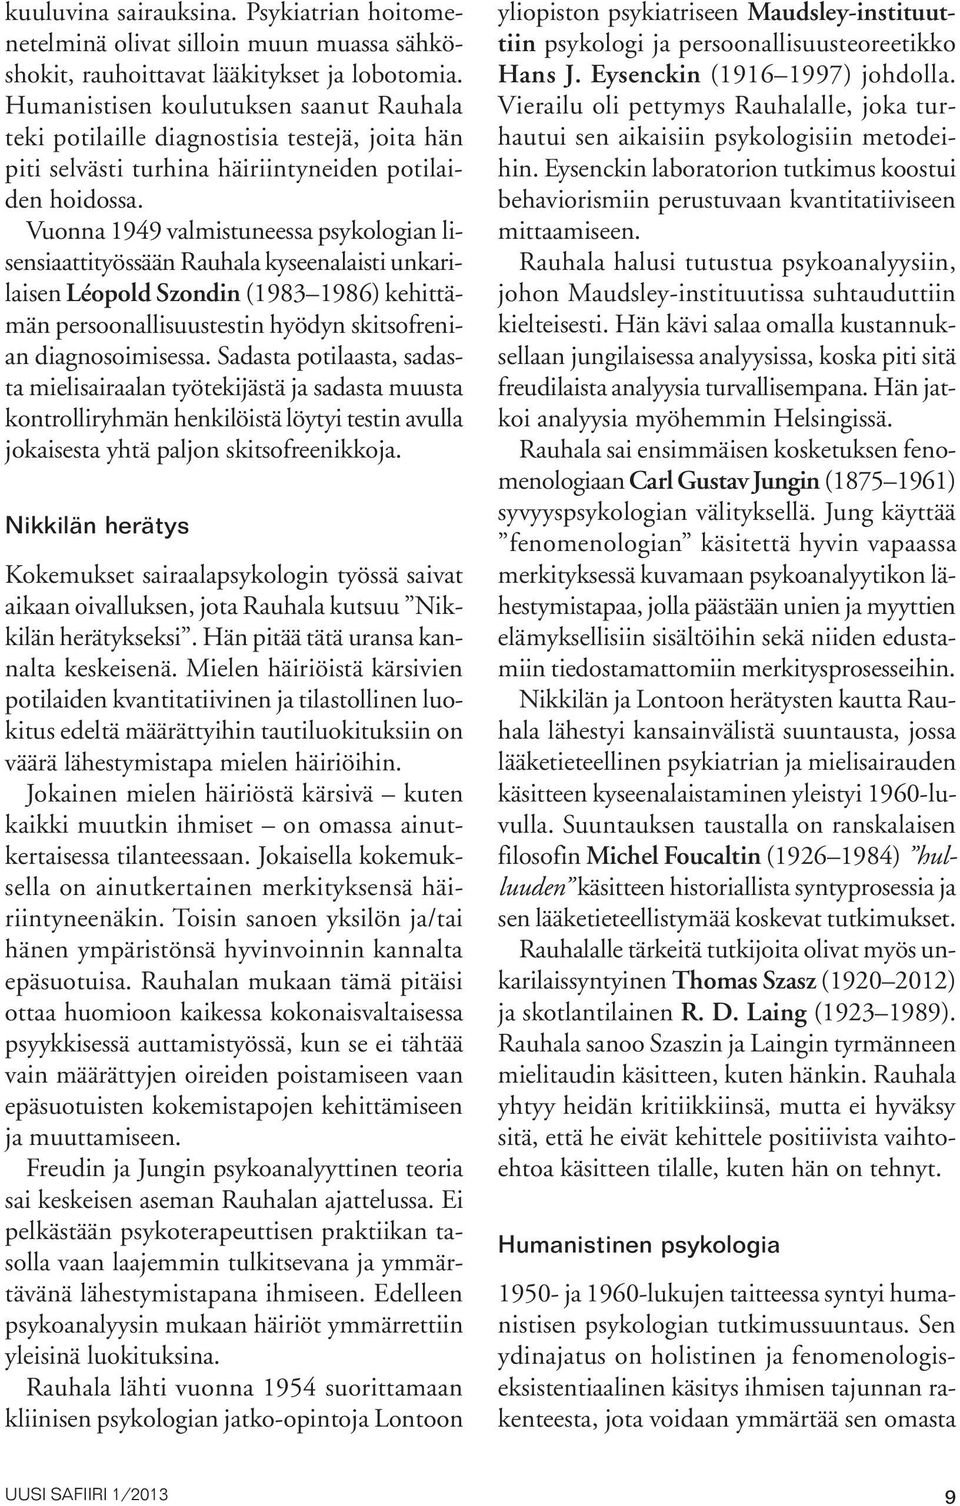 Vuonna 1949 valmistuneessa psykologian lisensiaattityössään Rauhala kyseenalaisti unkarilaisen Léopold Szondin (1983 1986) kehittämän persoonallisuustestin hyödyn skitsofrenian diagnosoimisessa.